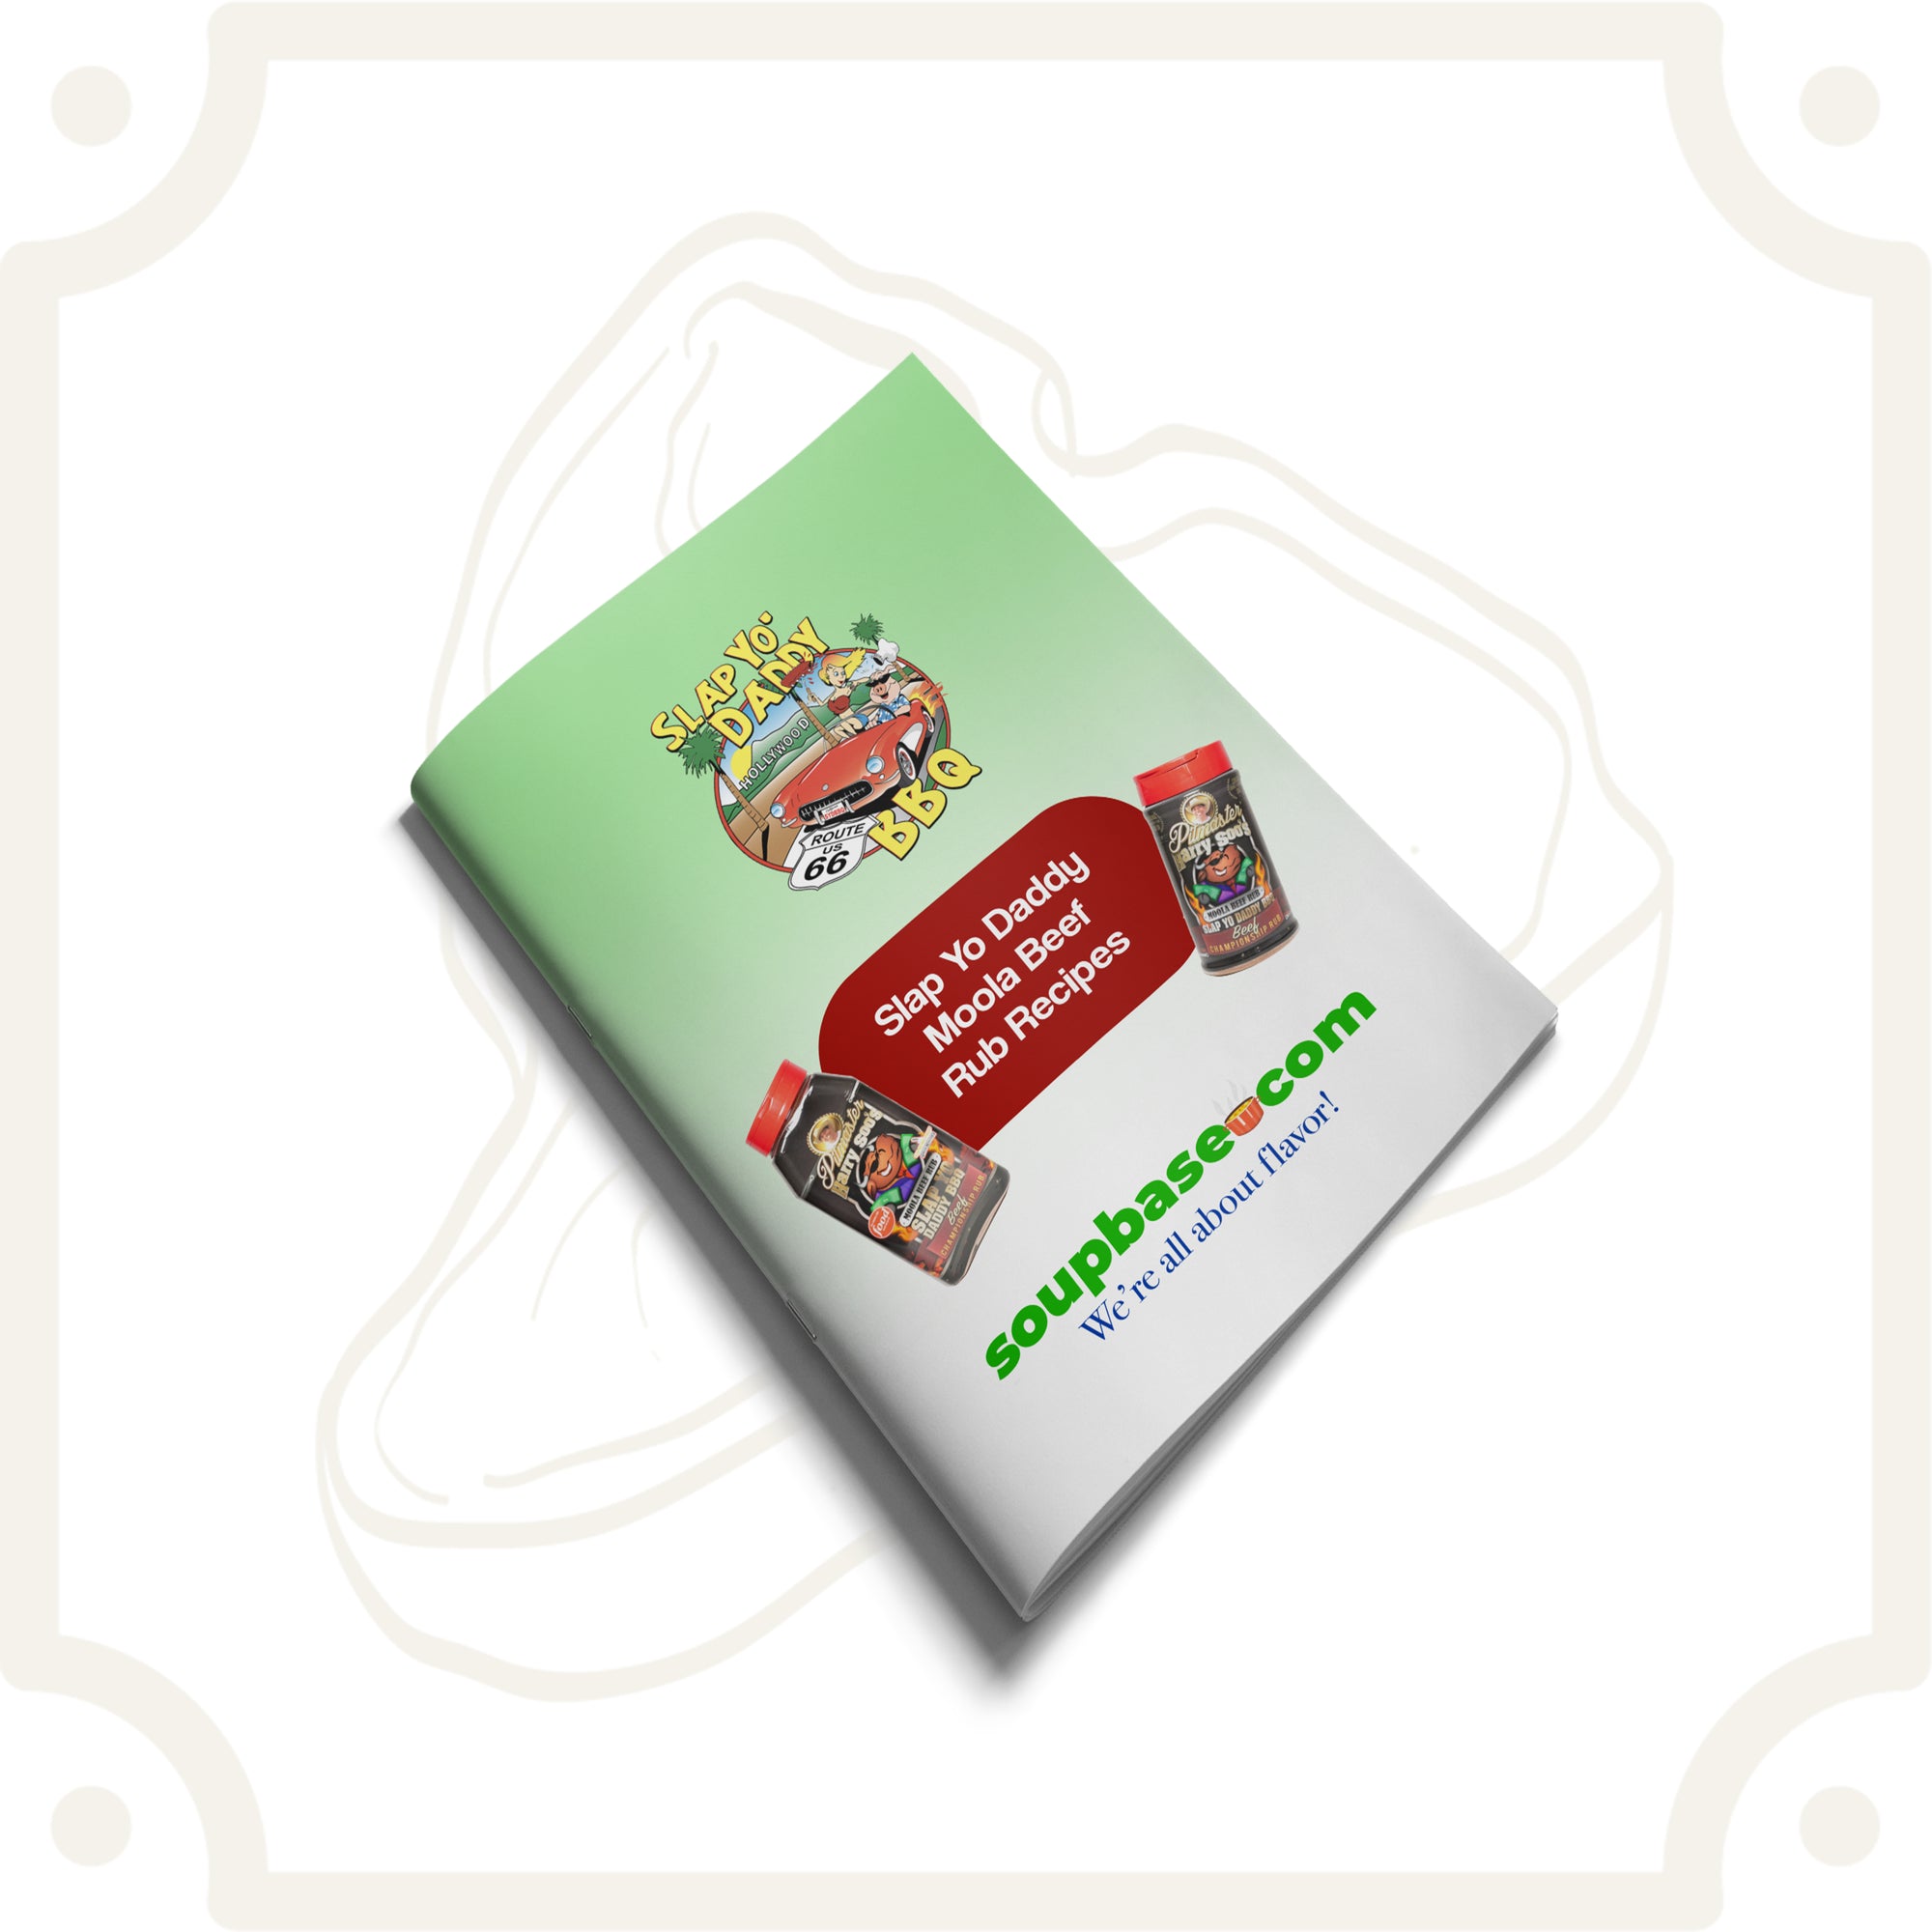 SYD Moola Beef Rub Recipe Booklet